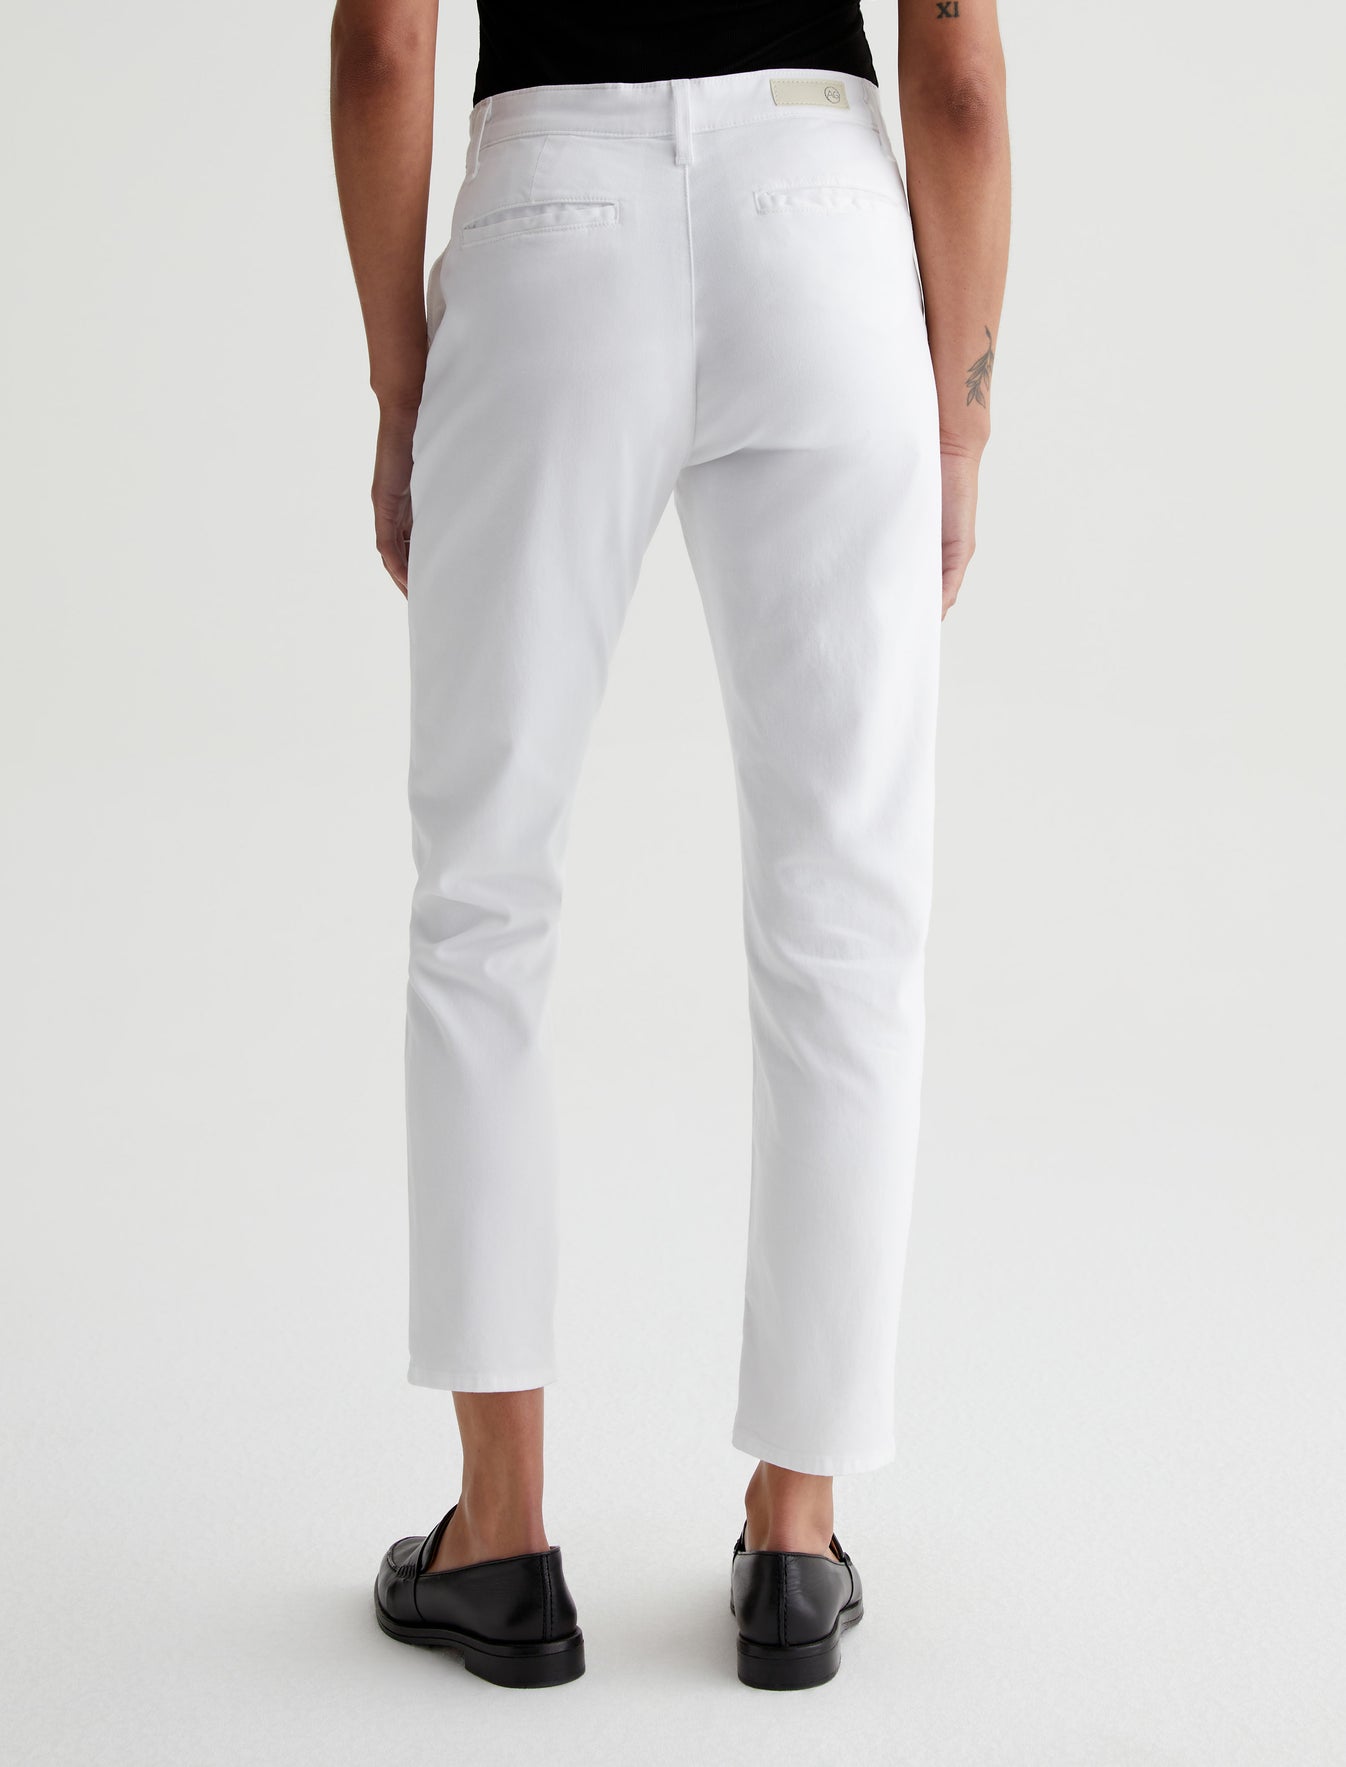 Caden White Tailored Trouser Women Bottom Photo 6